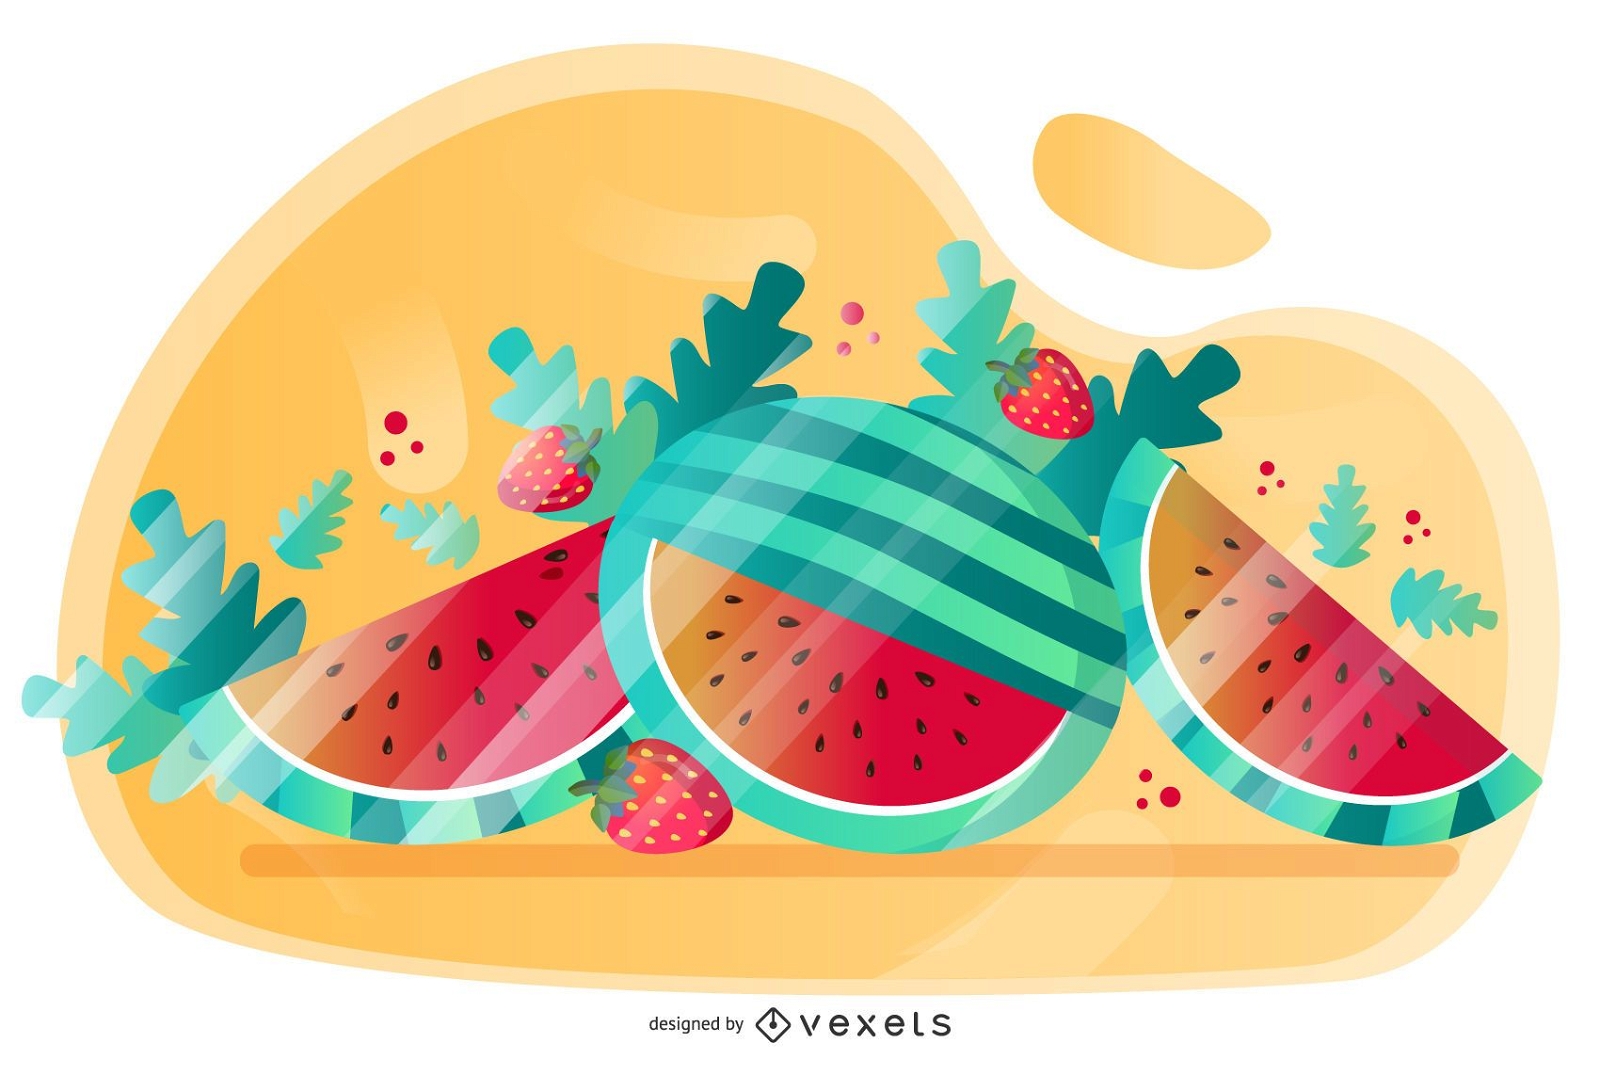 Wassermelonen-Vektor-k?nstlerisches Design